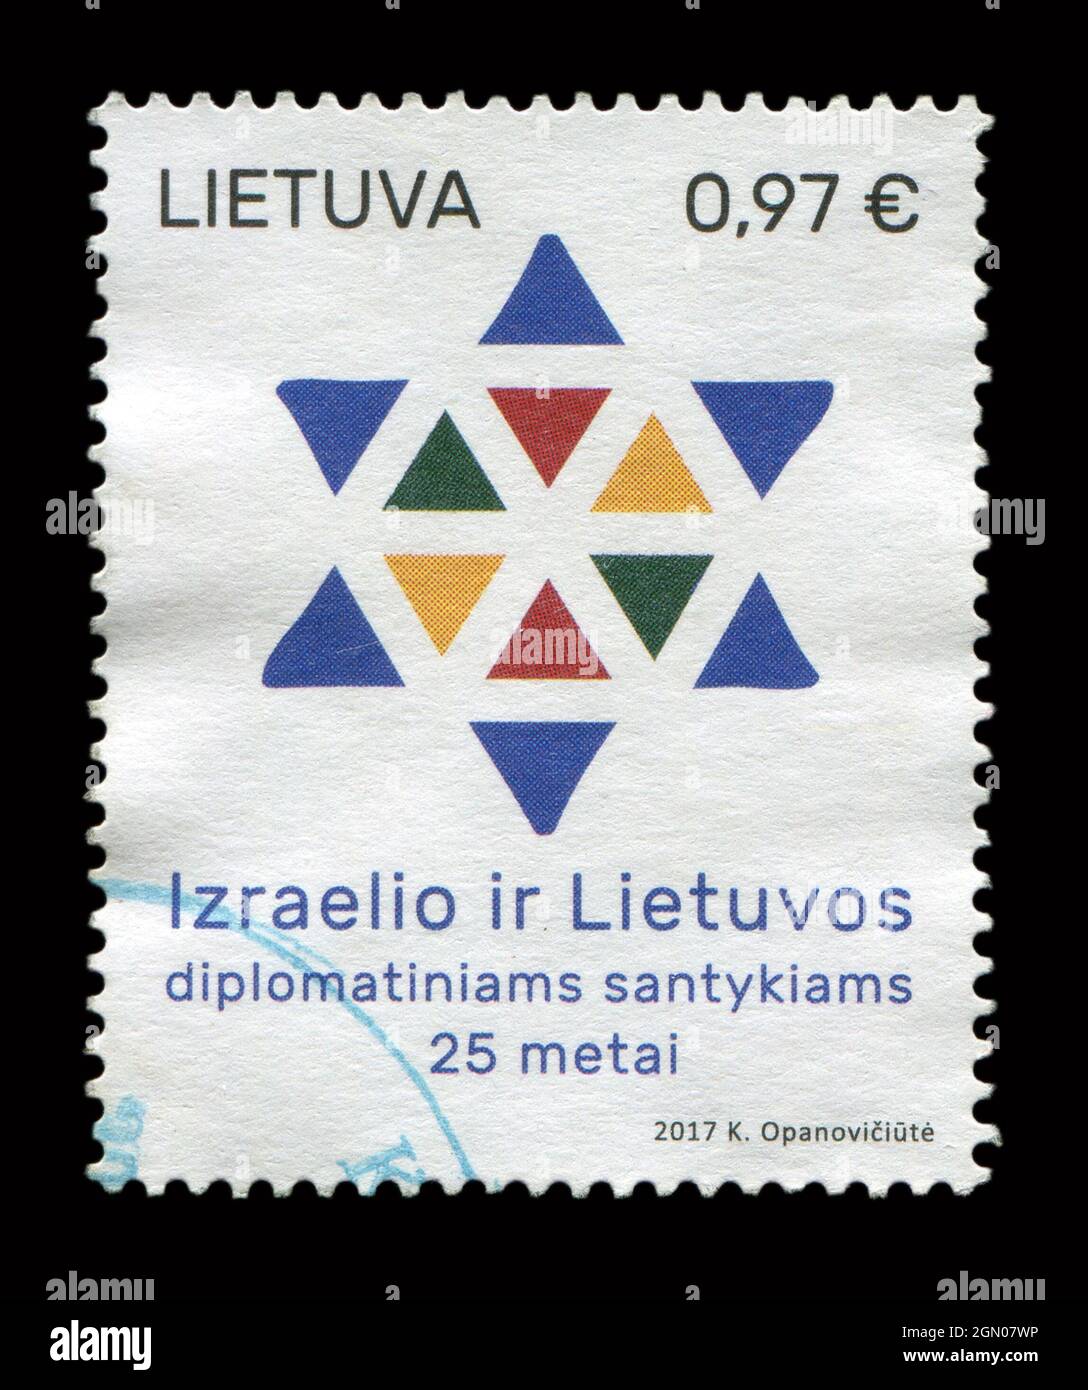 Il francobollo stampato in Lituania mostra l'immagine dell'Izraelio ir Lietuvos, circa 2017. Foto Stock